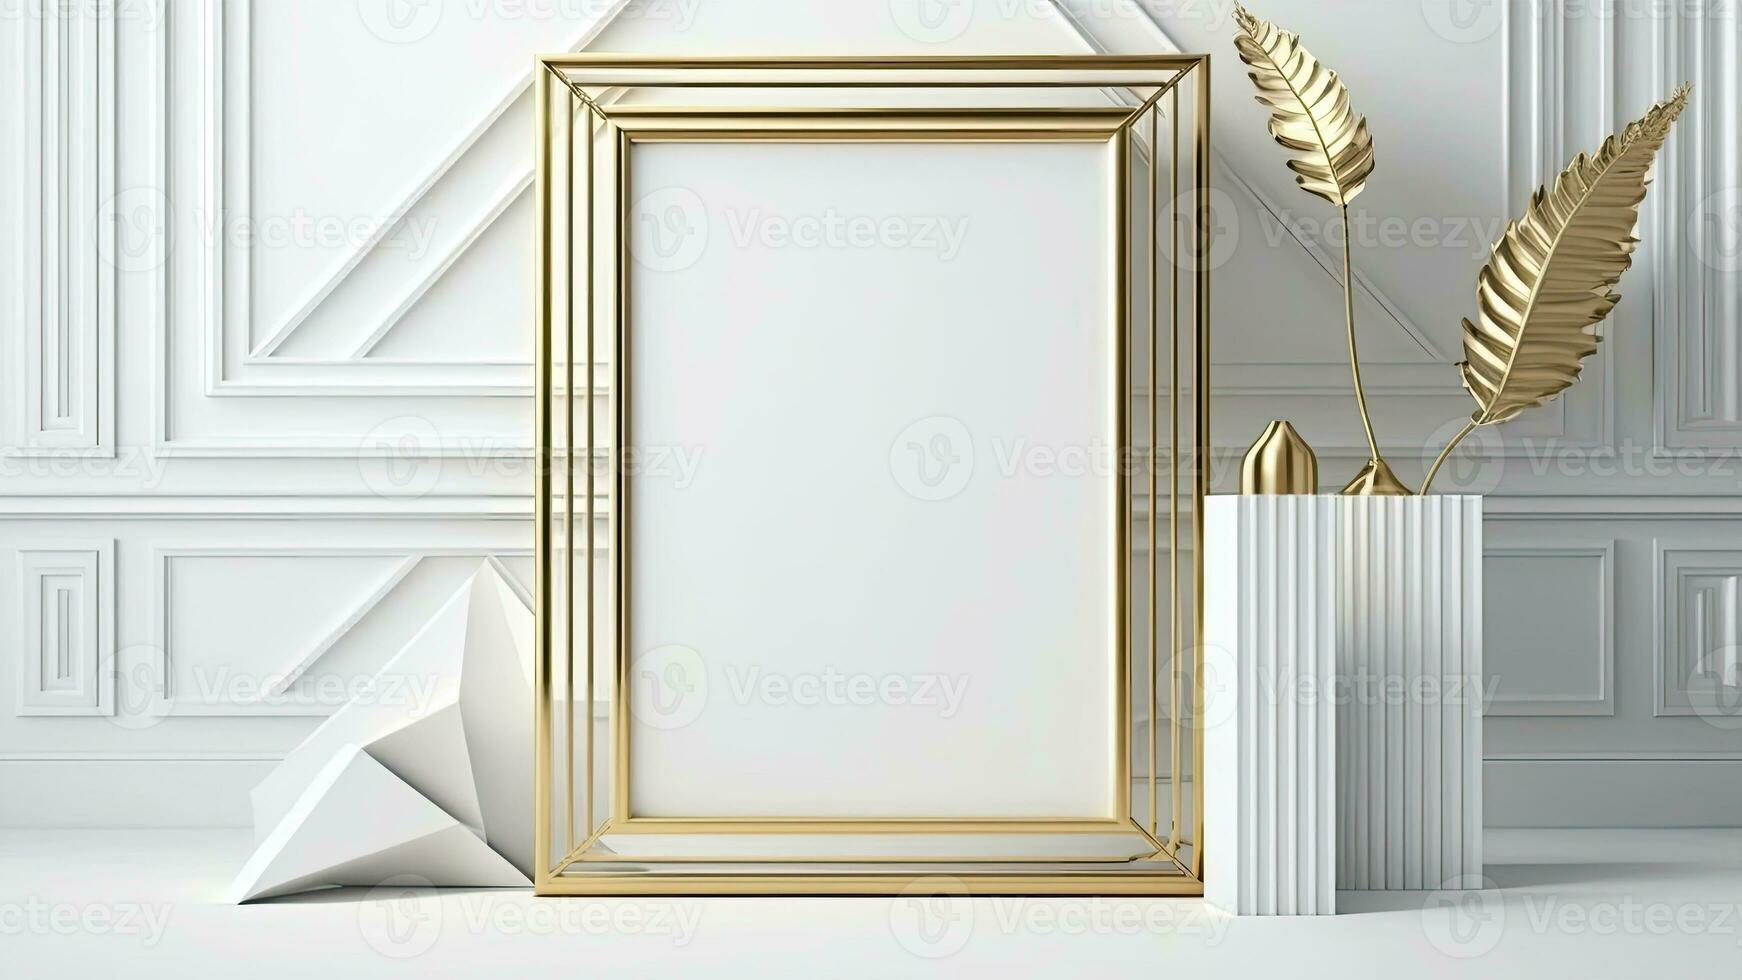 3d composição do em branco dourado foto quadro, Armação brincar perto dourado plantar em pedestal e interior parede painéis.